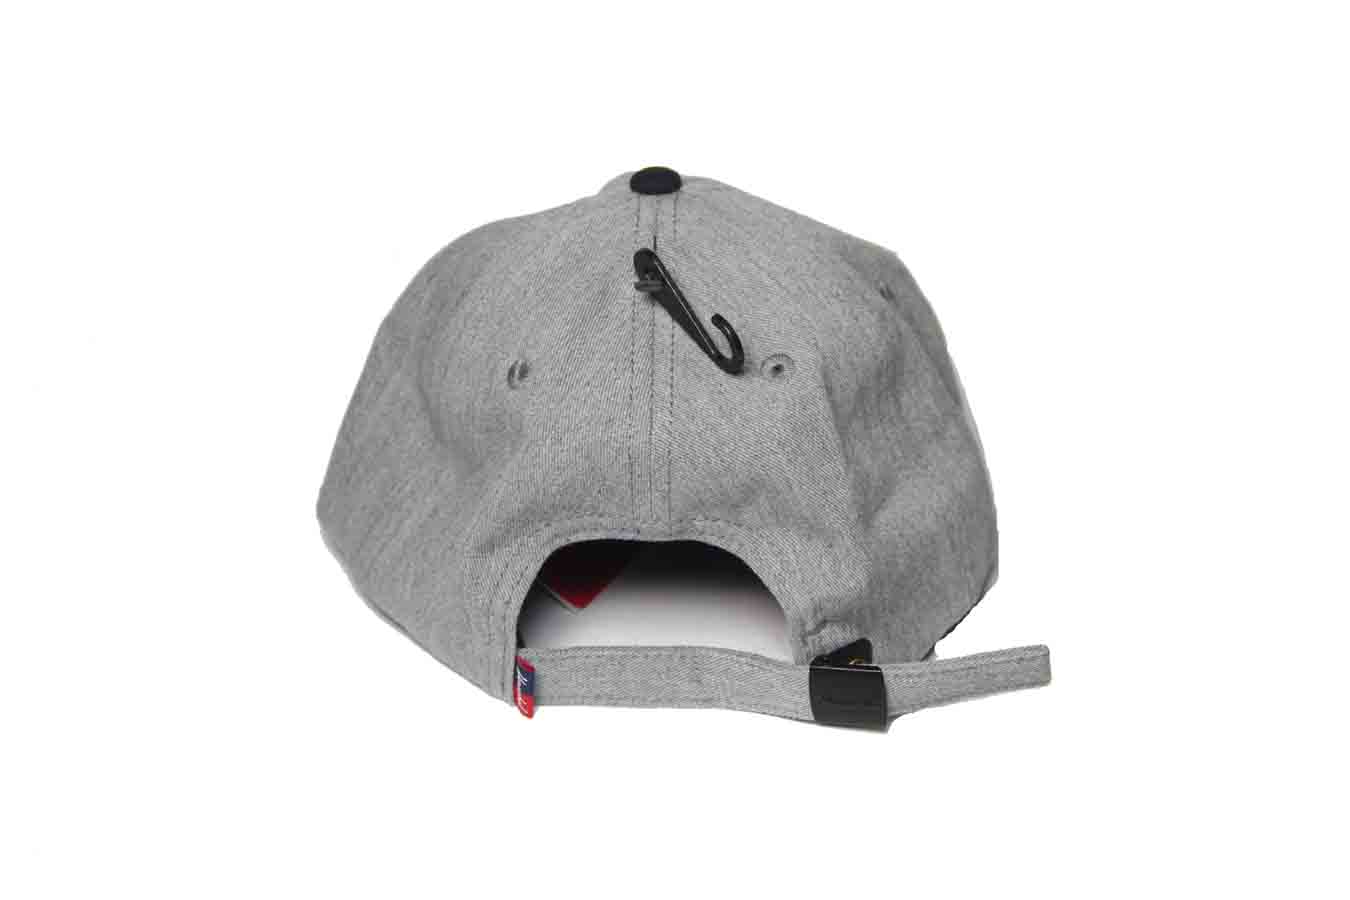 Herschel Supply Cotton Twill Albert Cap Hat Gray Black Men's One Size